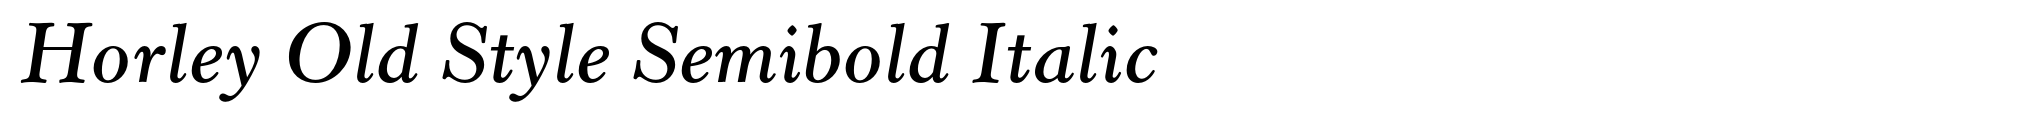 Horley Old Style Semibold Italic image